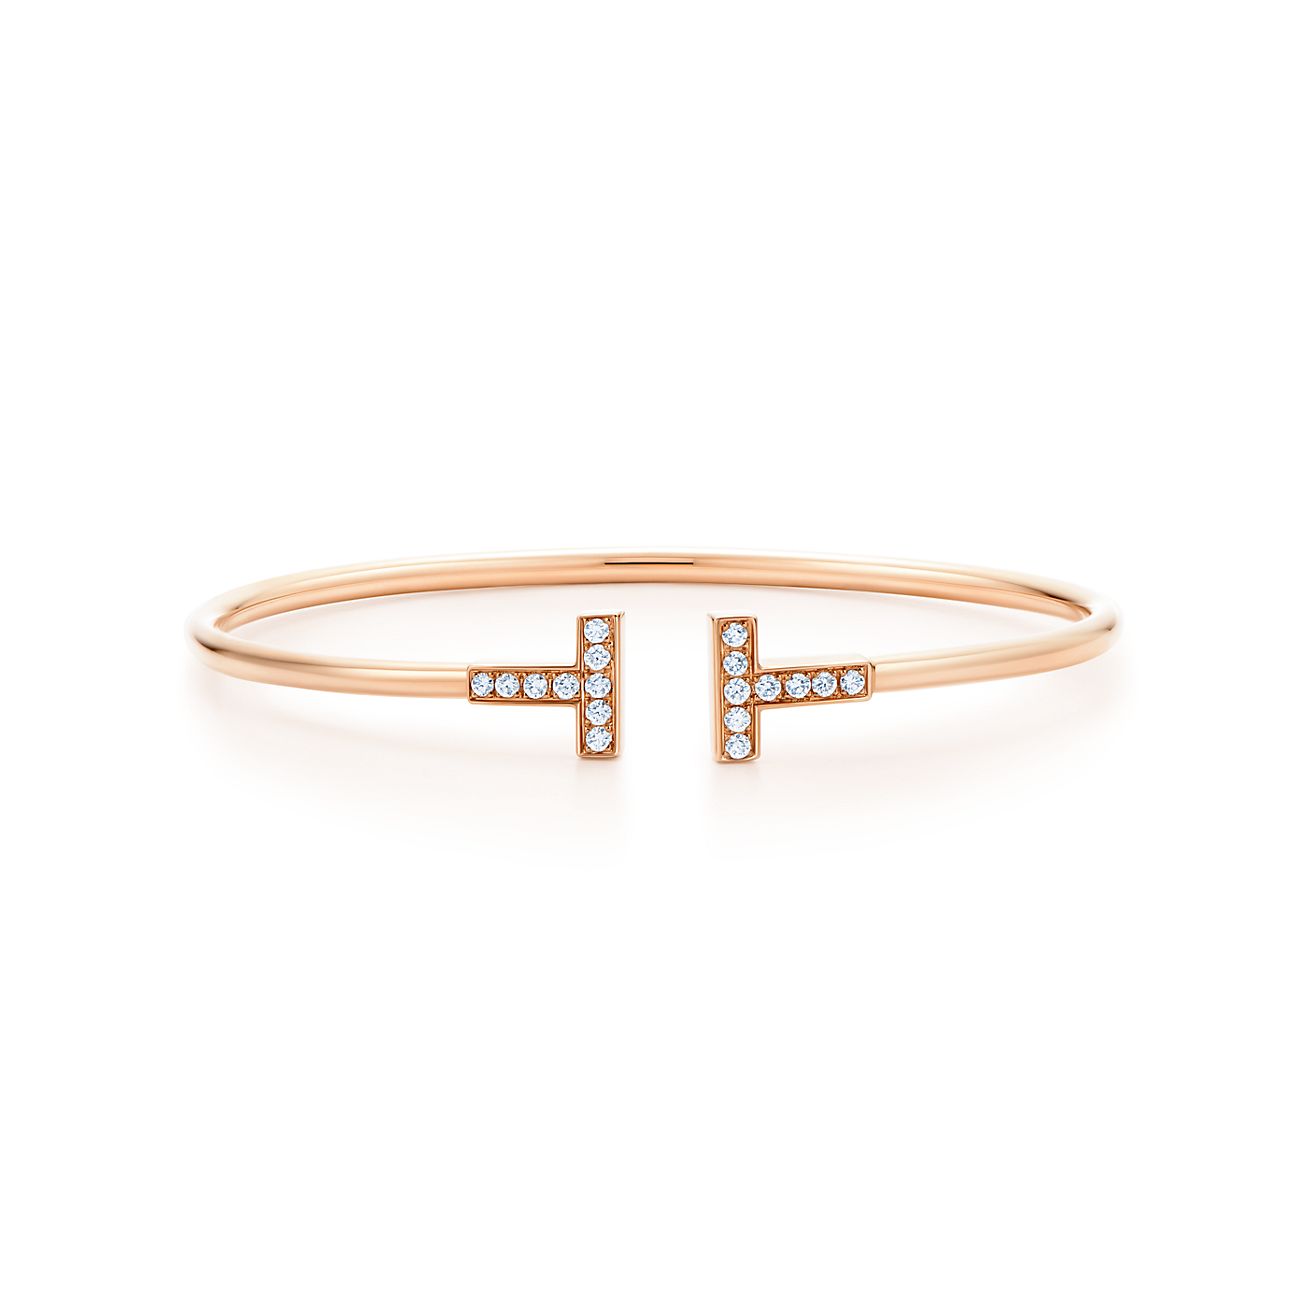 Tiffany T Wire Bracelet in Rose Gold 